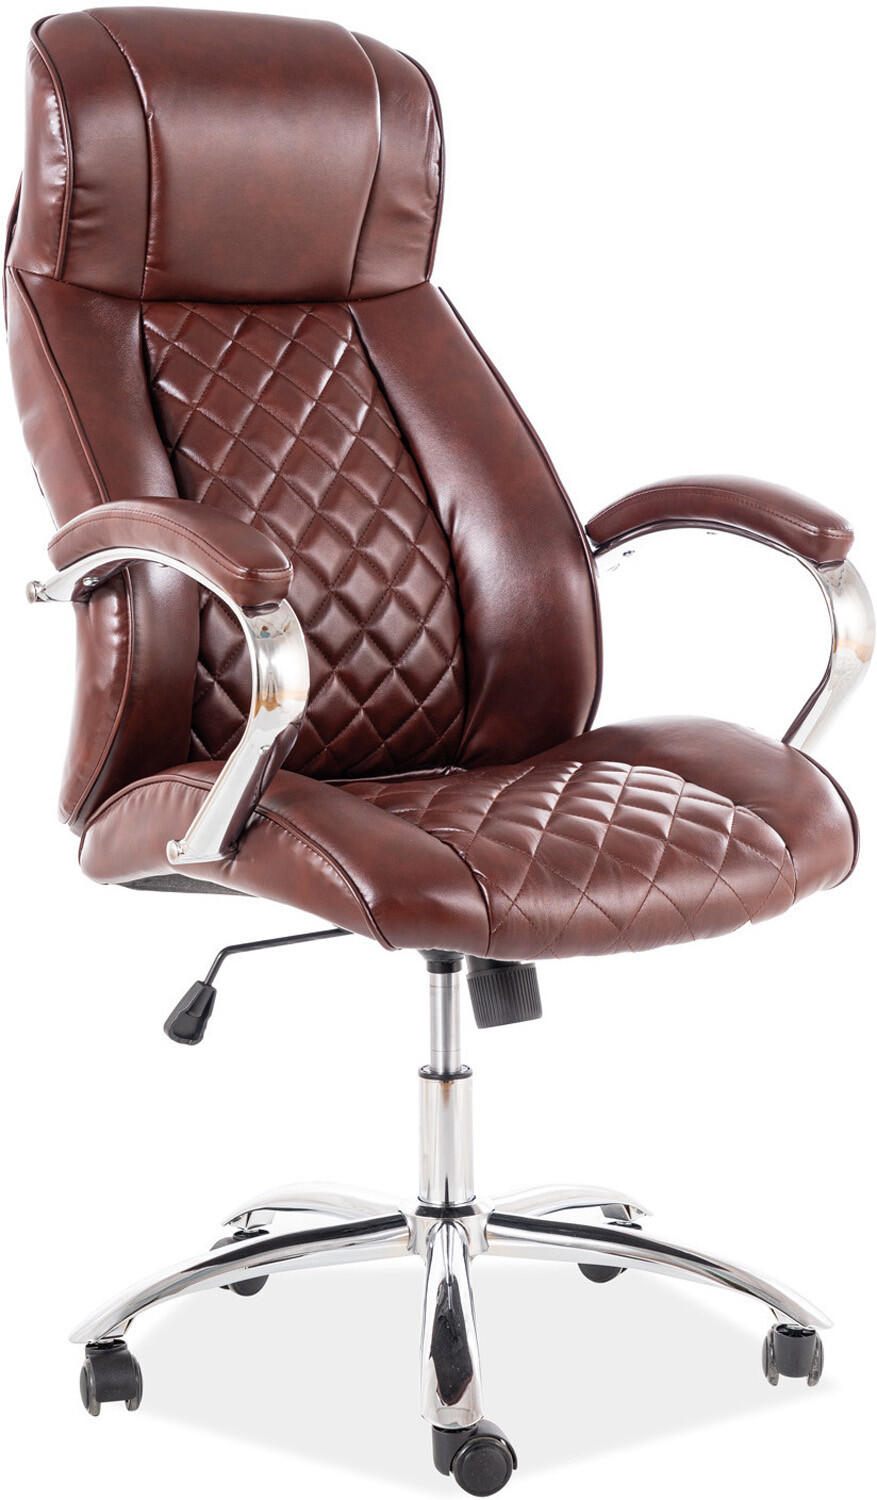 Кресло компьютерное SIGNAL Q-557 коричневый (OBRQ557BR)